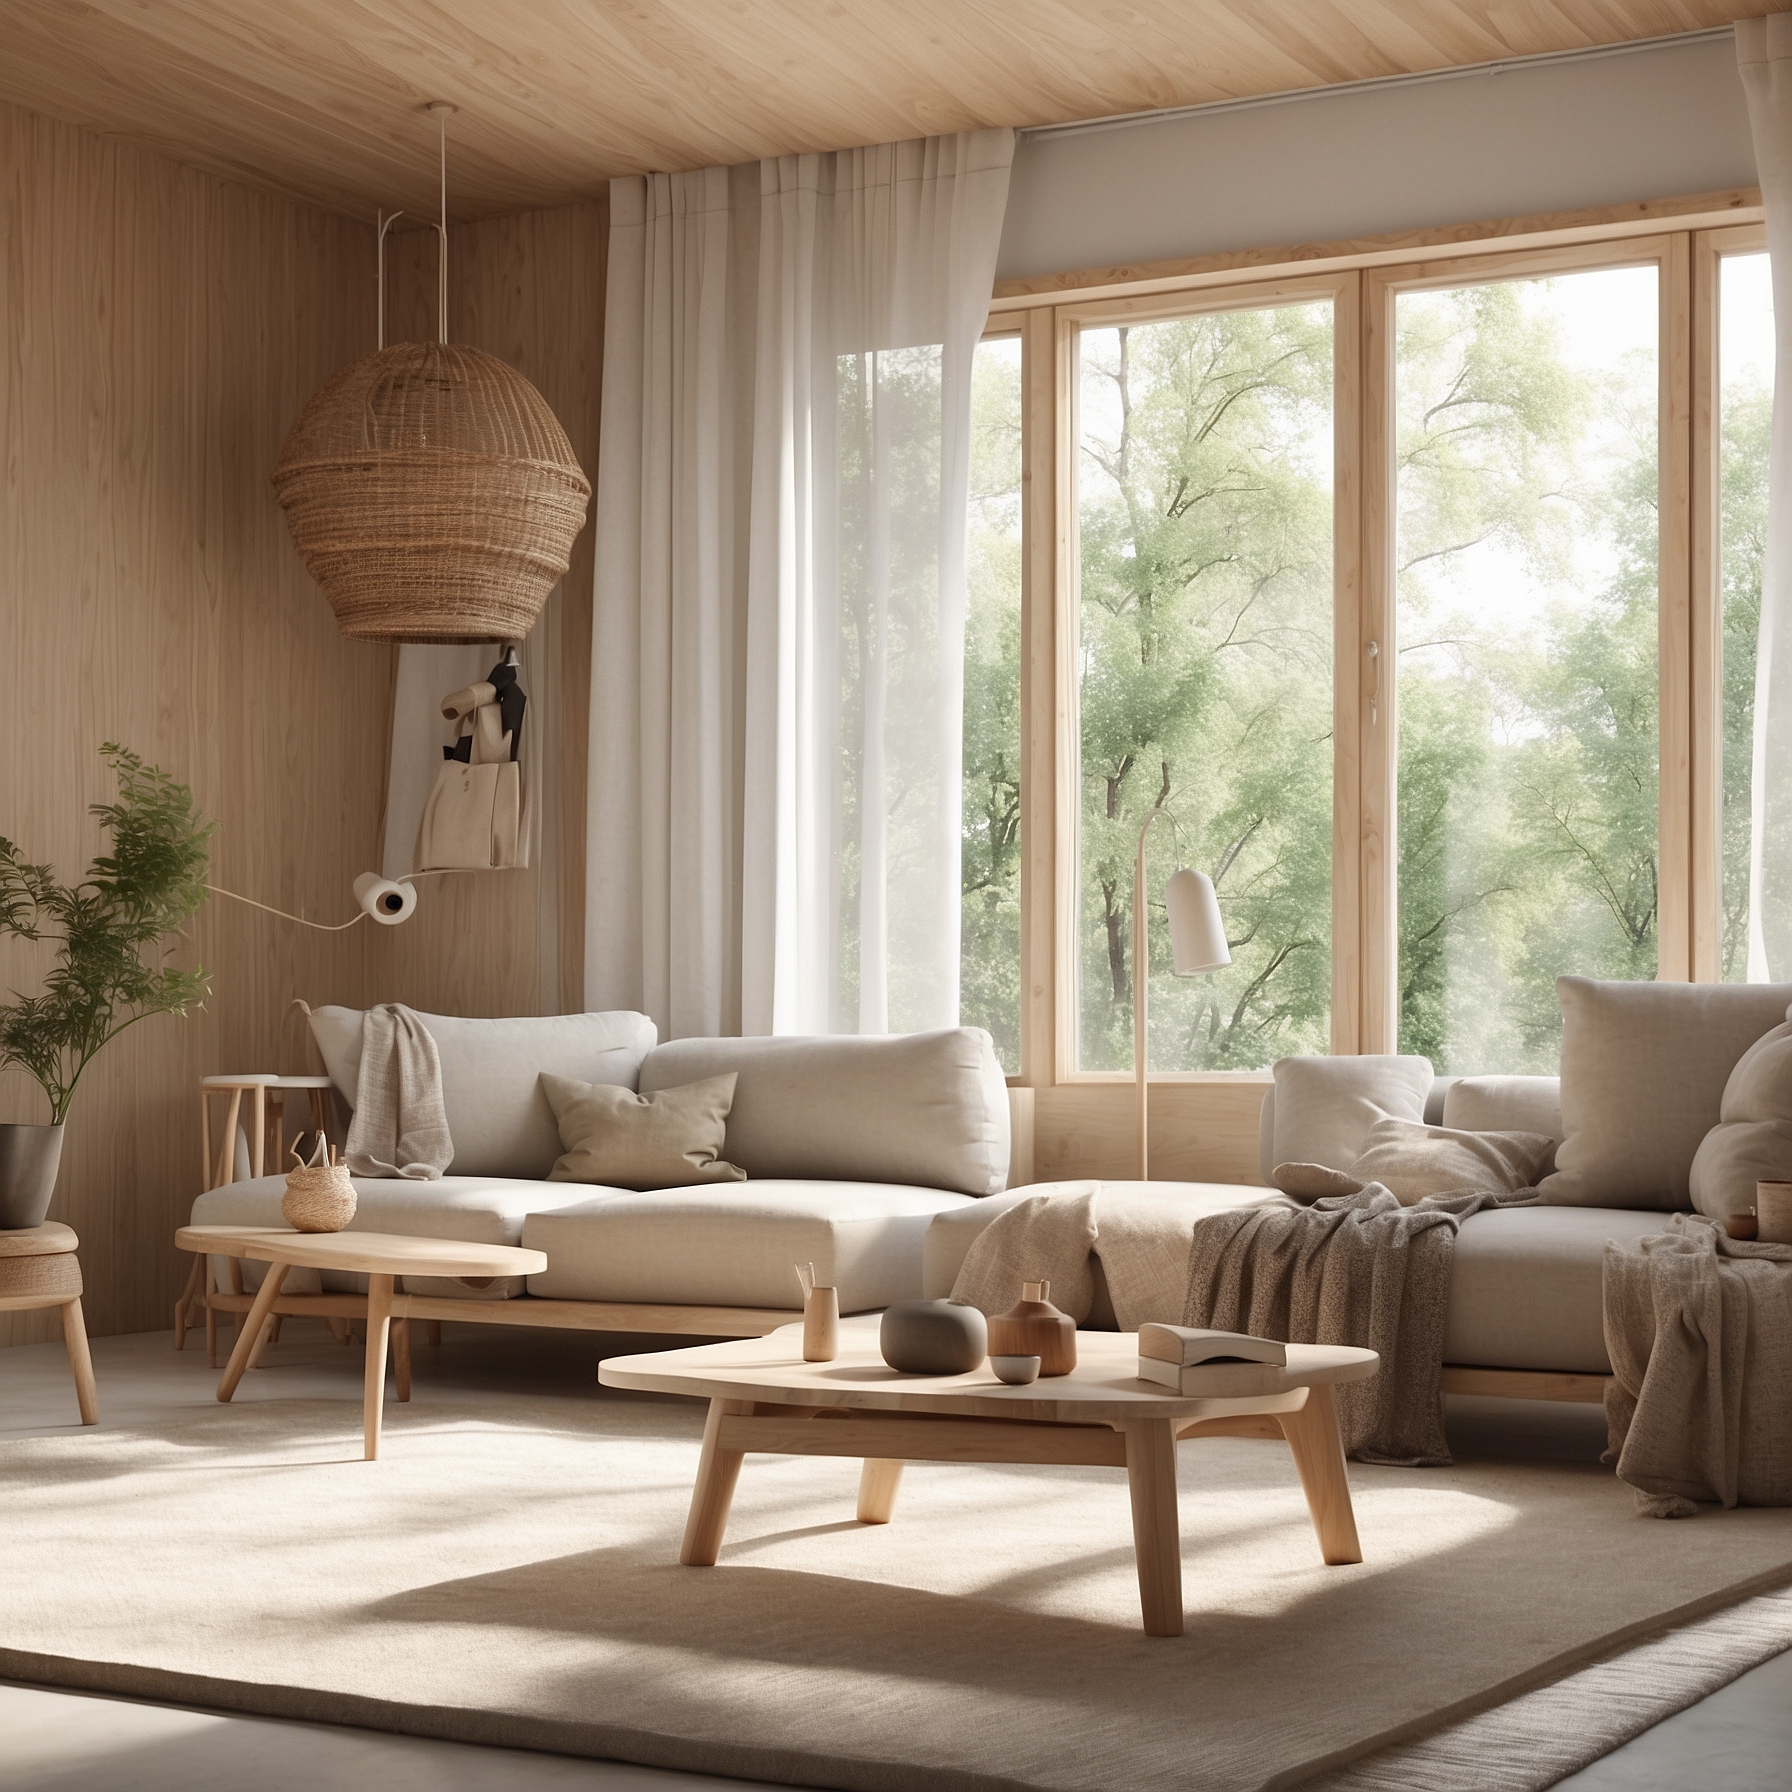 Natural scandinavian stijl woonkamer